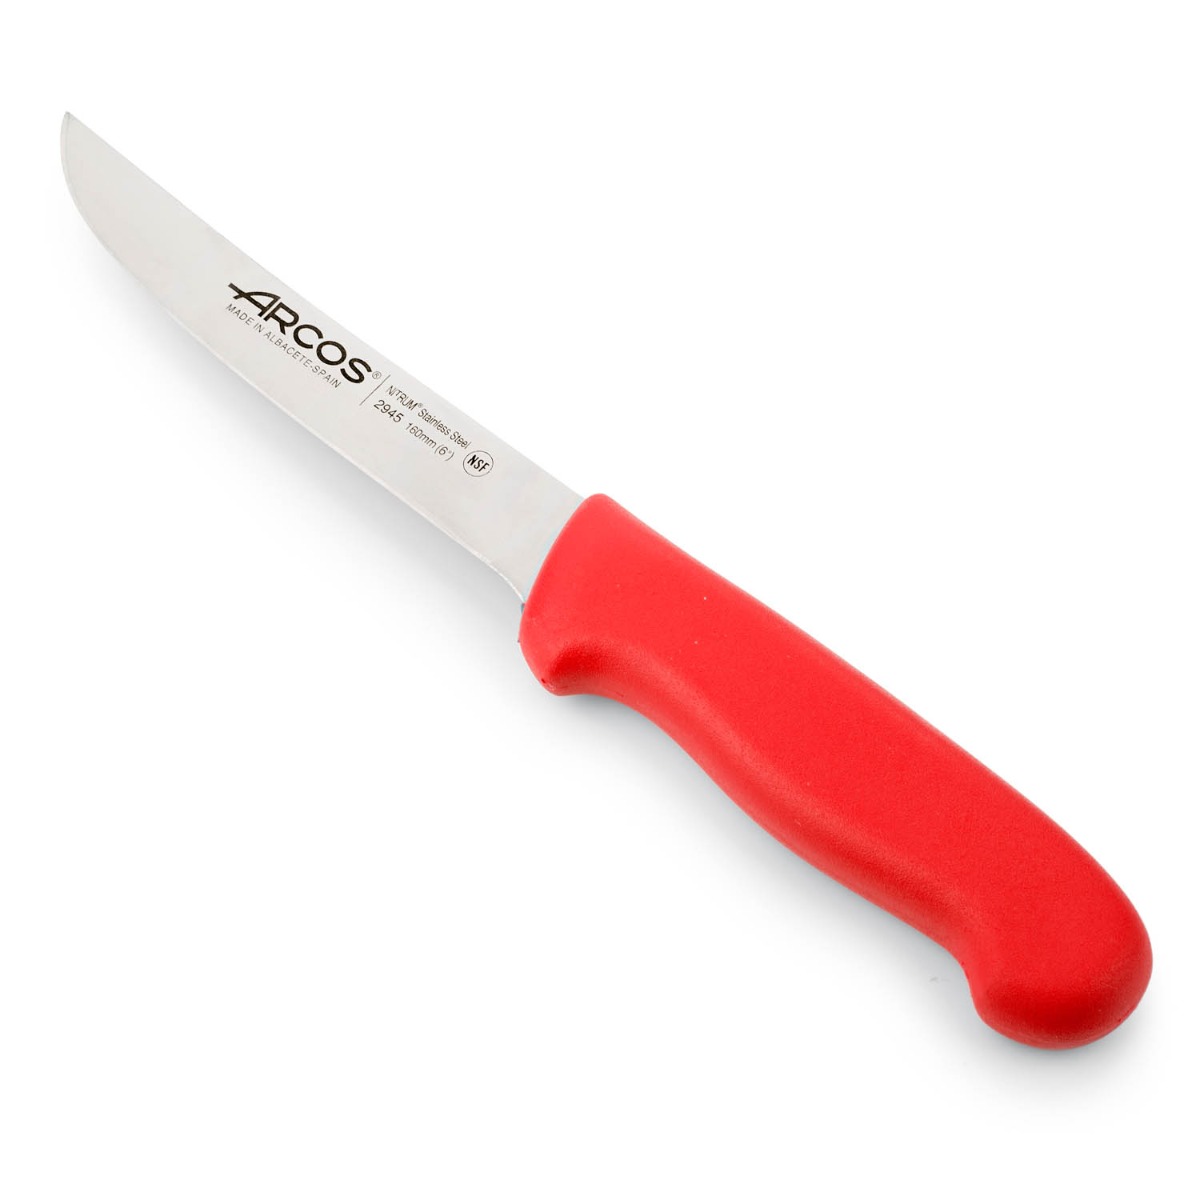 Arcos - Arcos Serie 2900 - Cuchillo Deshuesador - Hoja de Acero Inoxidable NITRUM de 160 mm - Mango inyectado en Polipropileno Color rojo